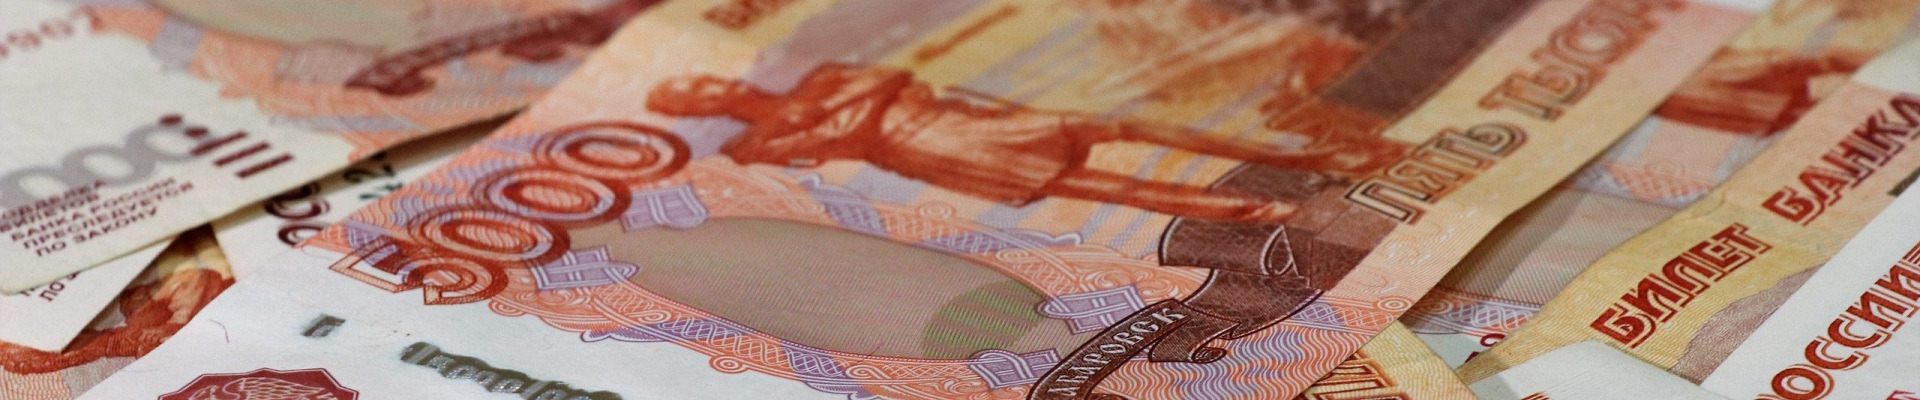 Принадлежащий Гуцериеву инвестиционный холдинг SFI получил в Совкомбанке займ на общую сумму 13,7 миллиардов рублей